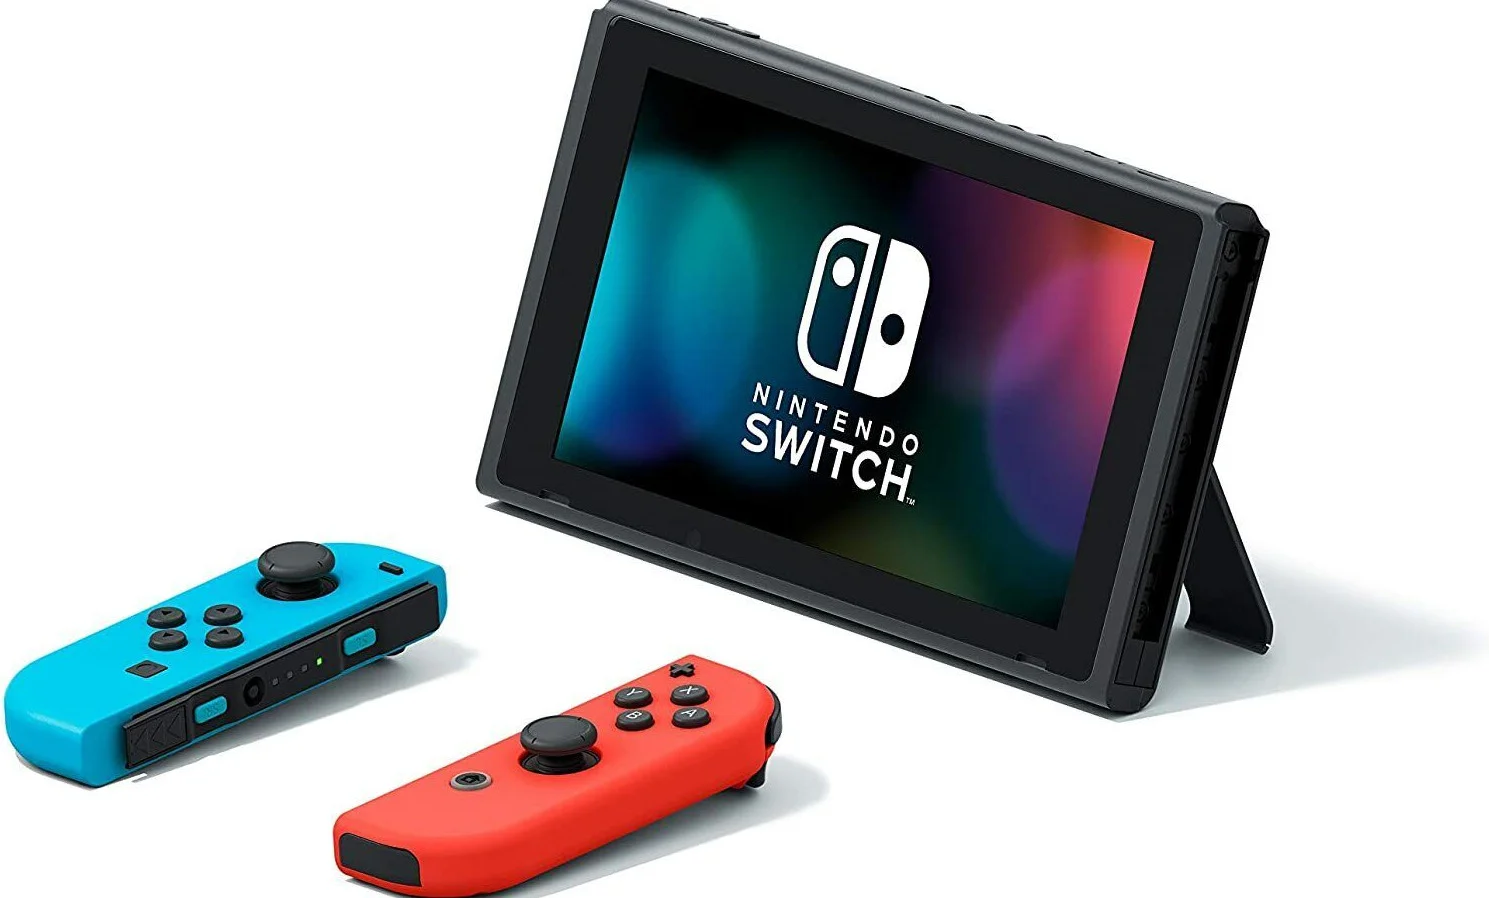 СМИ сообщило о наличии джой-конов в наследнике Nintendo Switch - фото 1